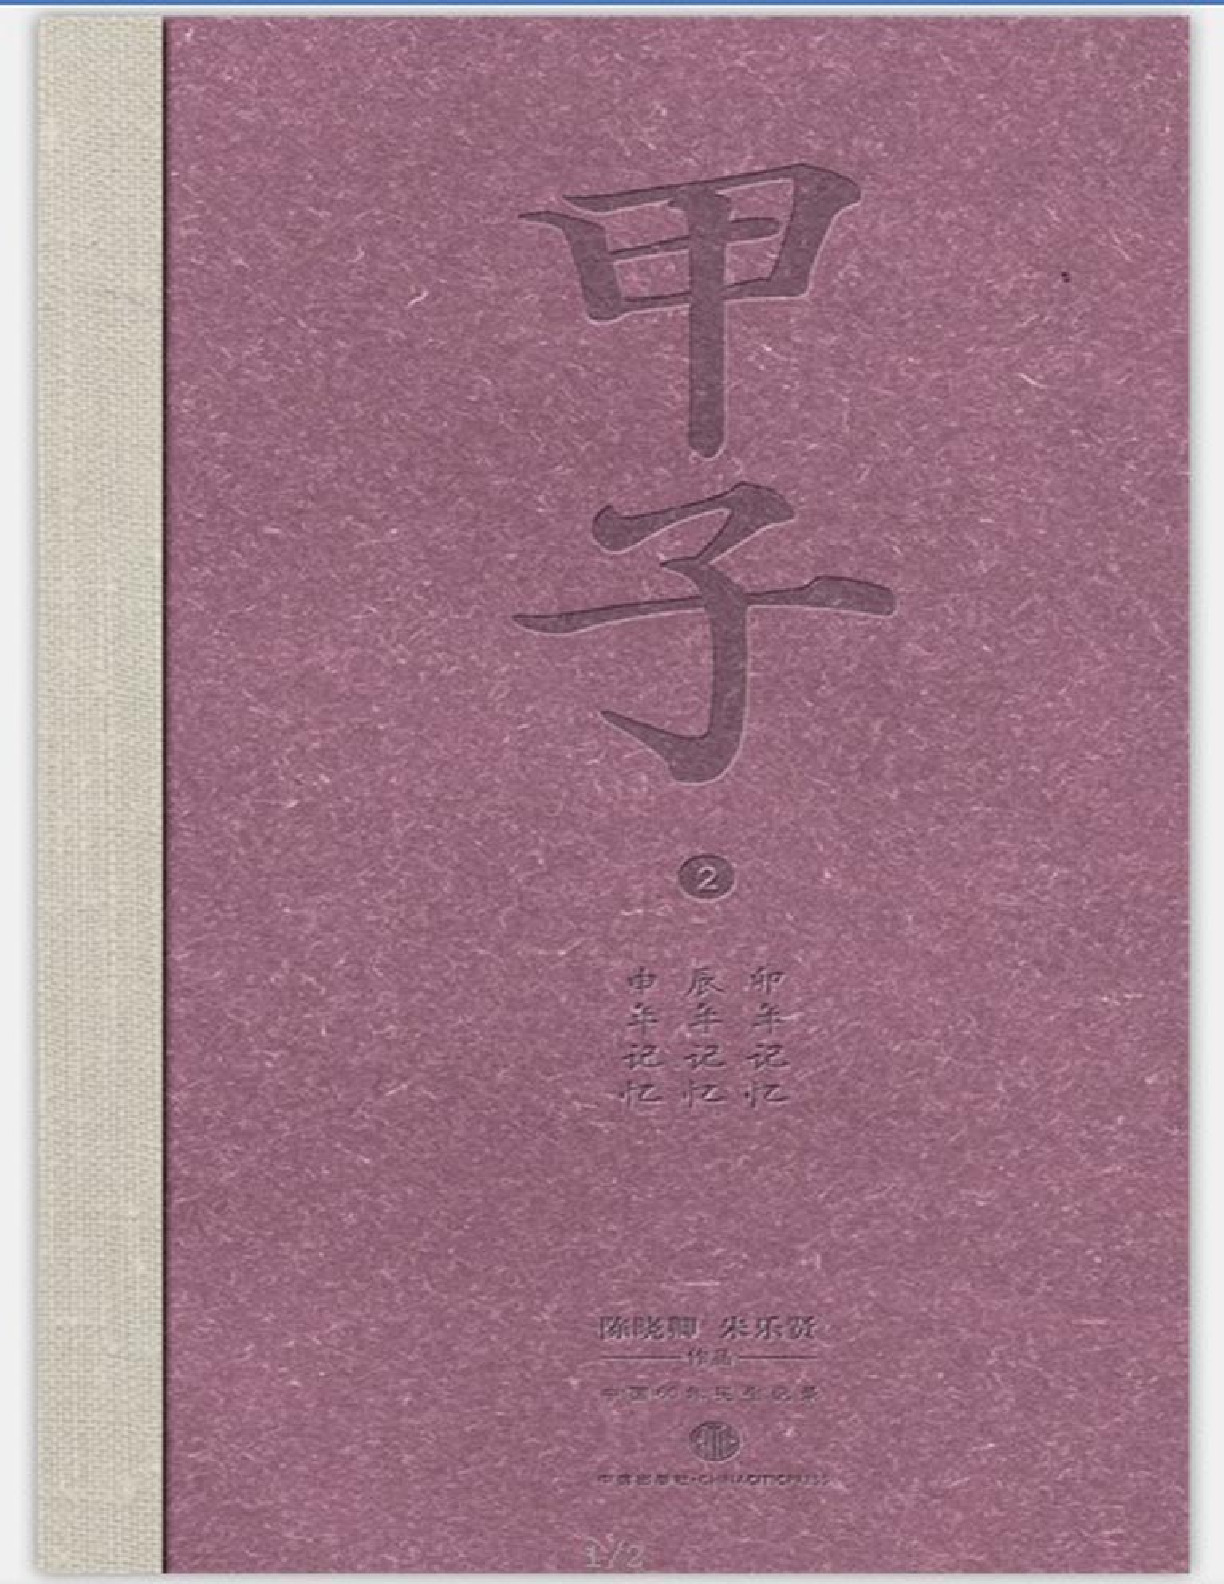 甲子2：中国60年民生记录 – 陈晓卿 & 朱乐贤